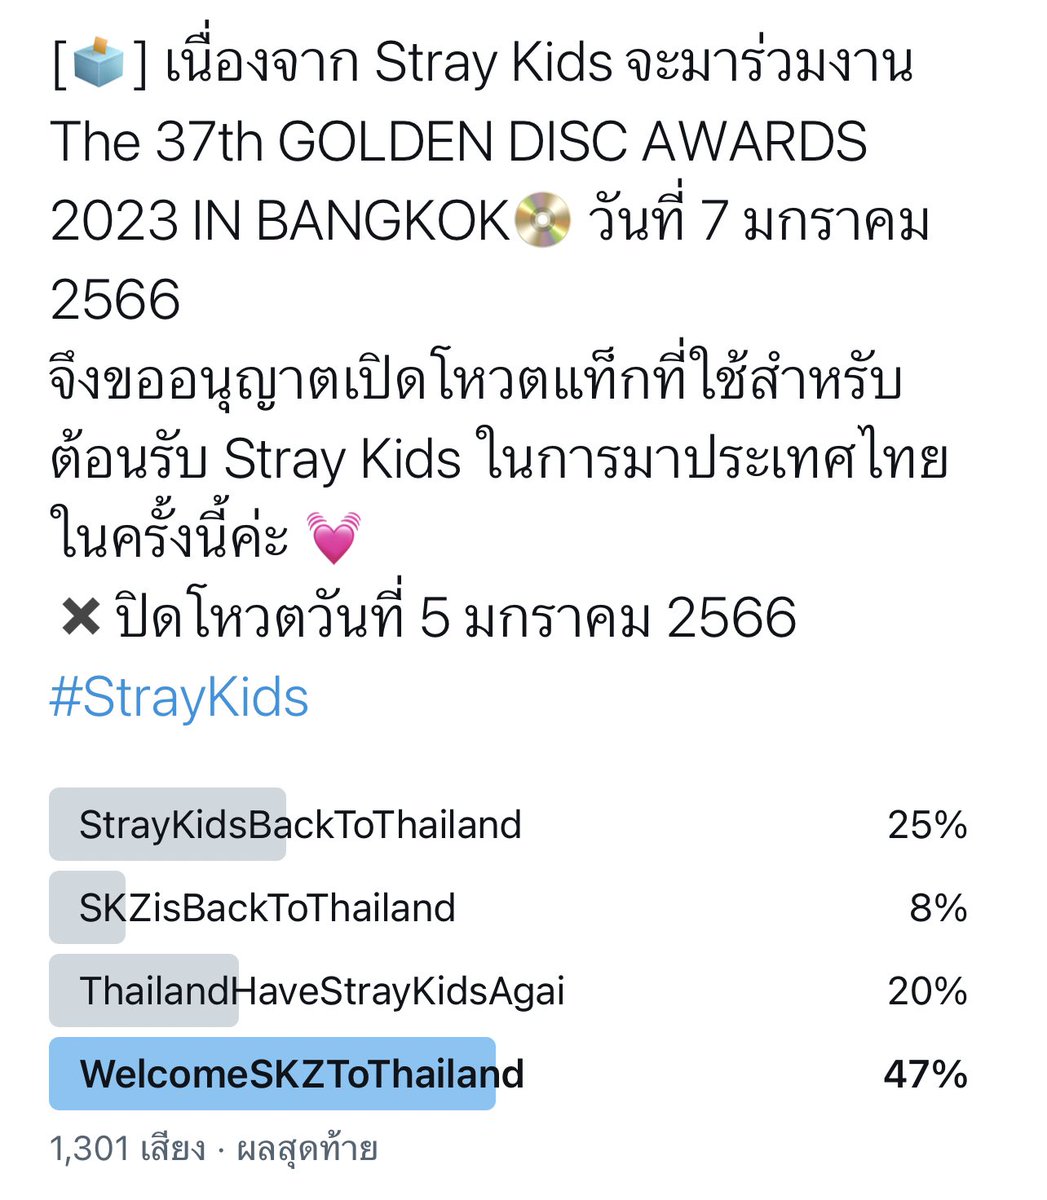 [🚫] ปิดโหวตแล้วนะคะ จากผลโหวต 1,301 เสียง hashtag ที่ได้รับโหวตสูงสุดคือ # WelcomeSKZToThailand ✔️หากทราบวันและเวลาที่ Stray Kids เดินทางมาประเทศไทย จะนัดหมายอีกครั้งค่ะ 🙆🏻‍♀️💓